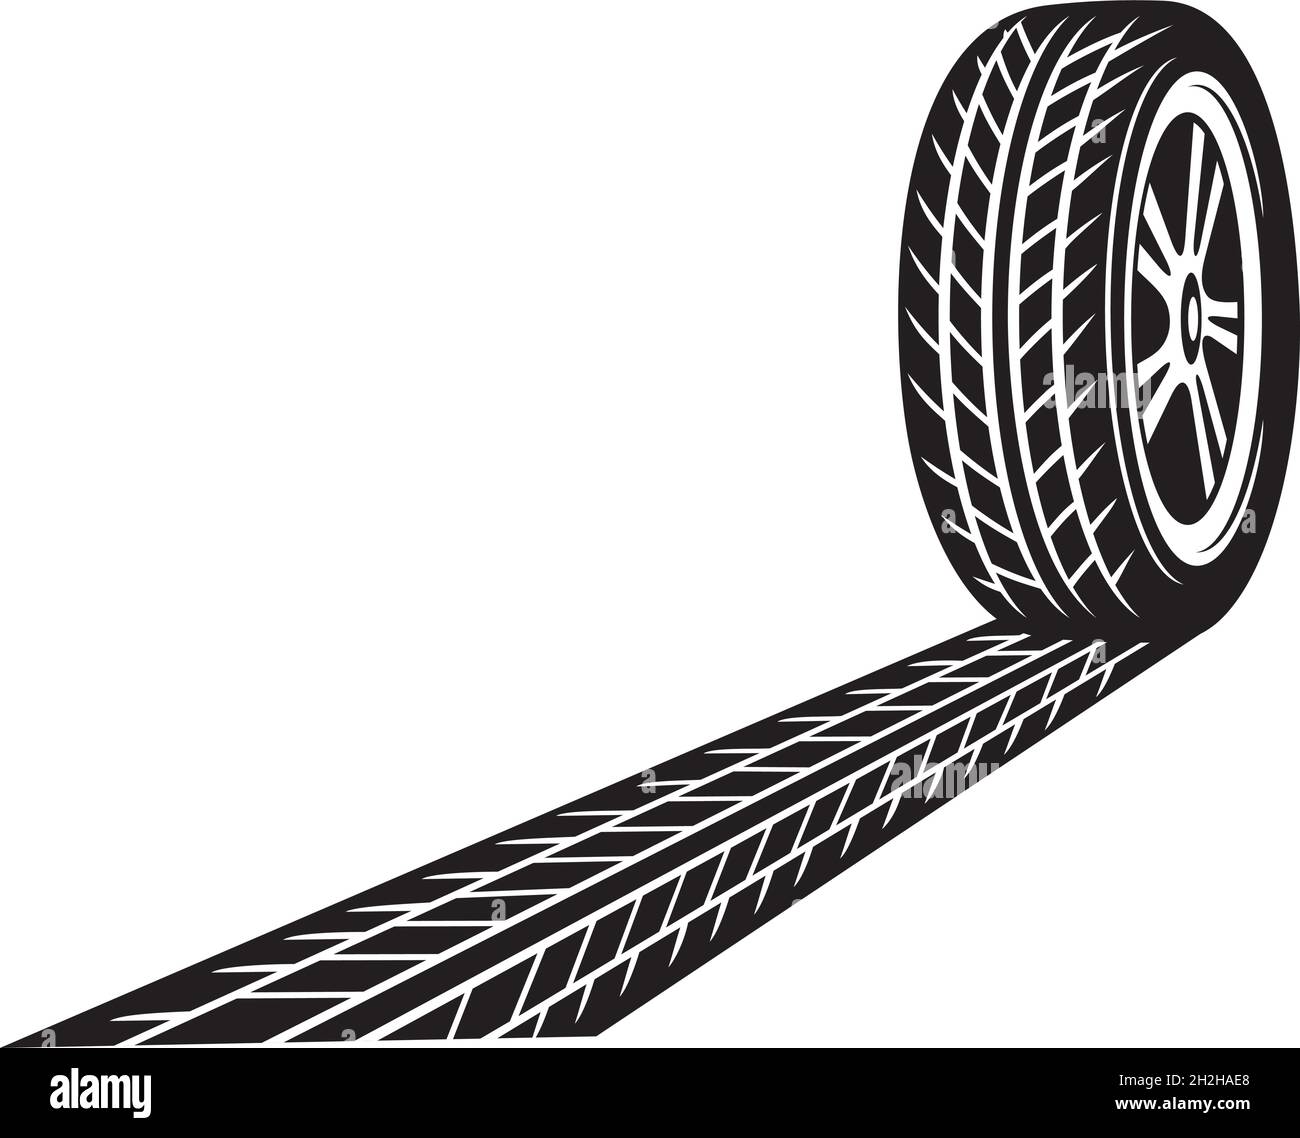 Abbildung von Reifen und Spurvektoren Stock Vektor